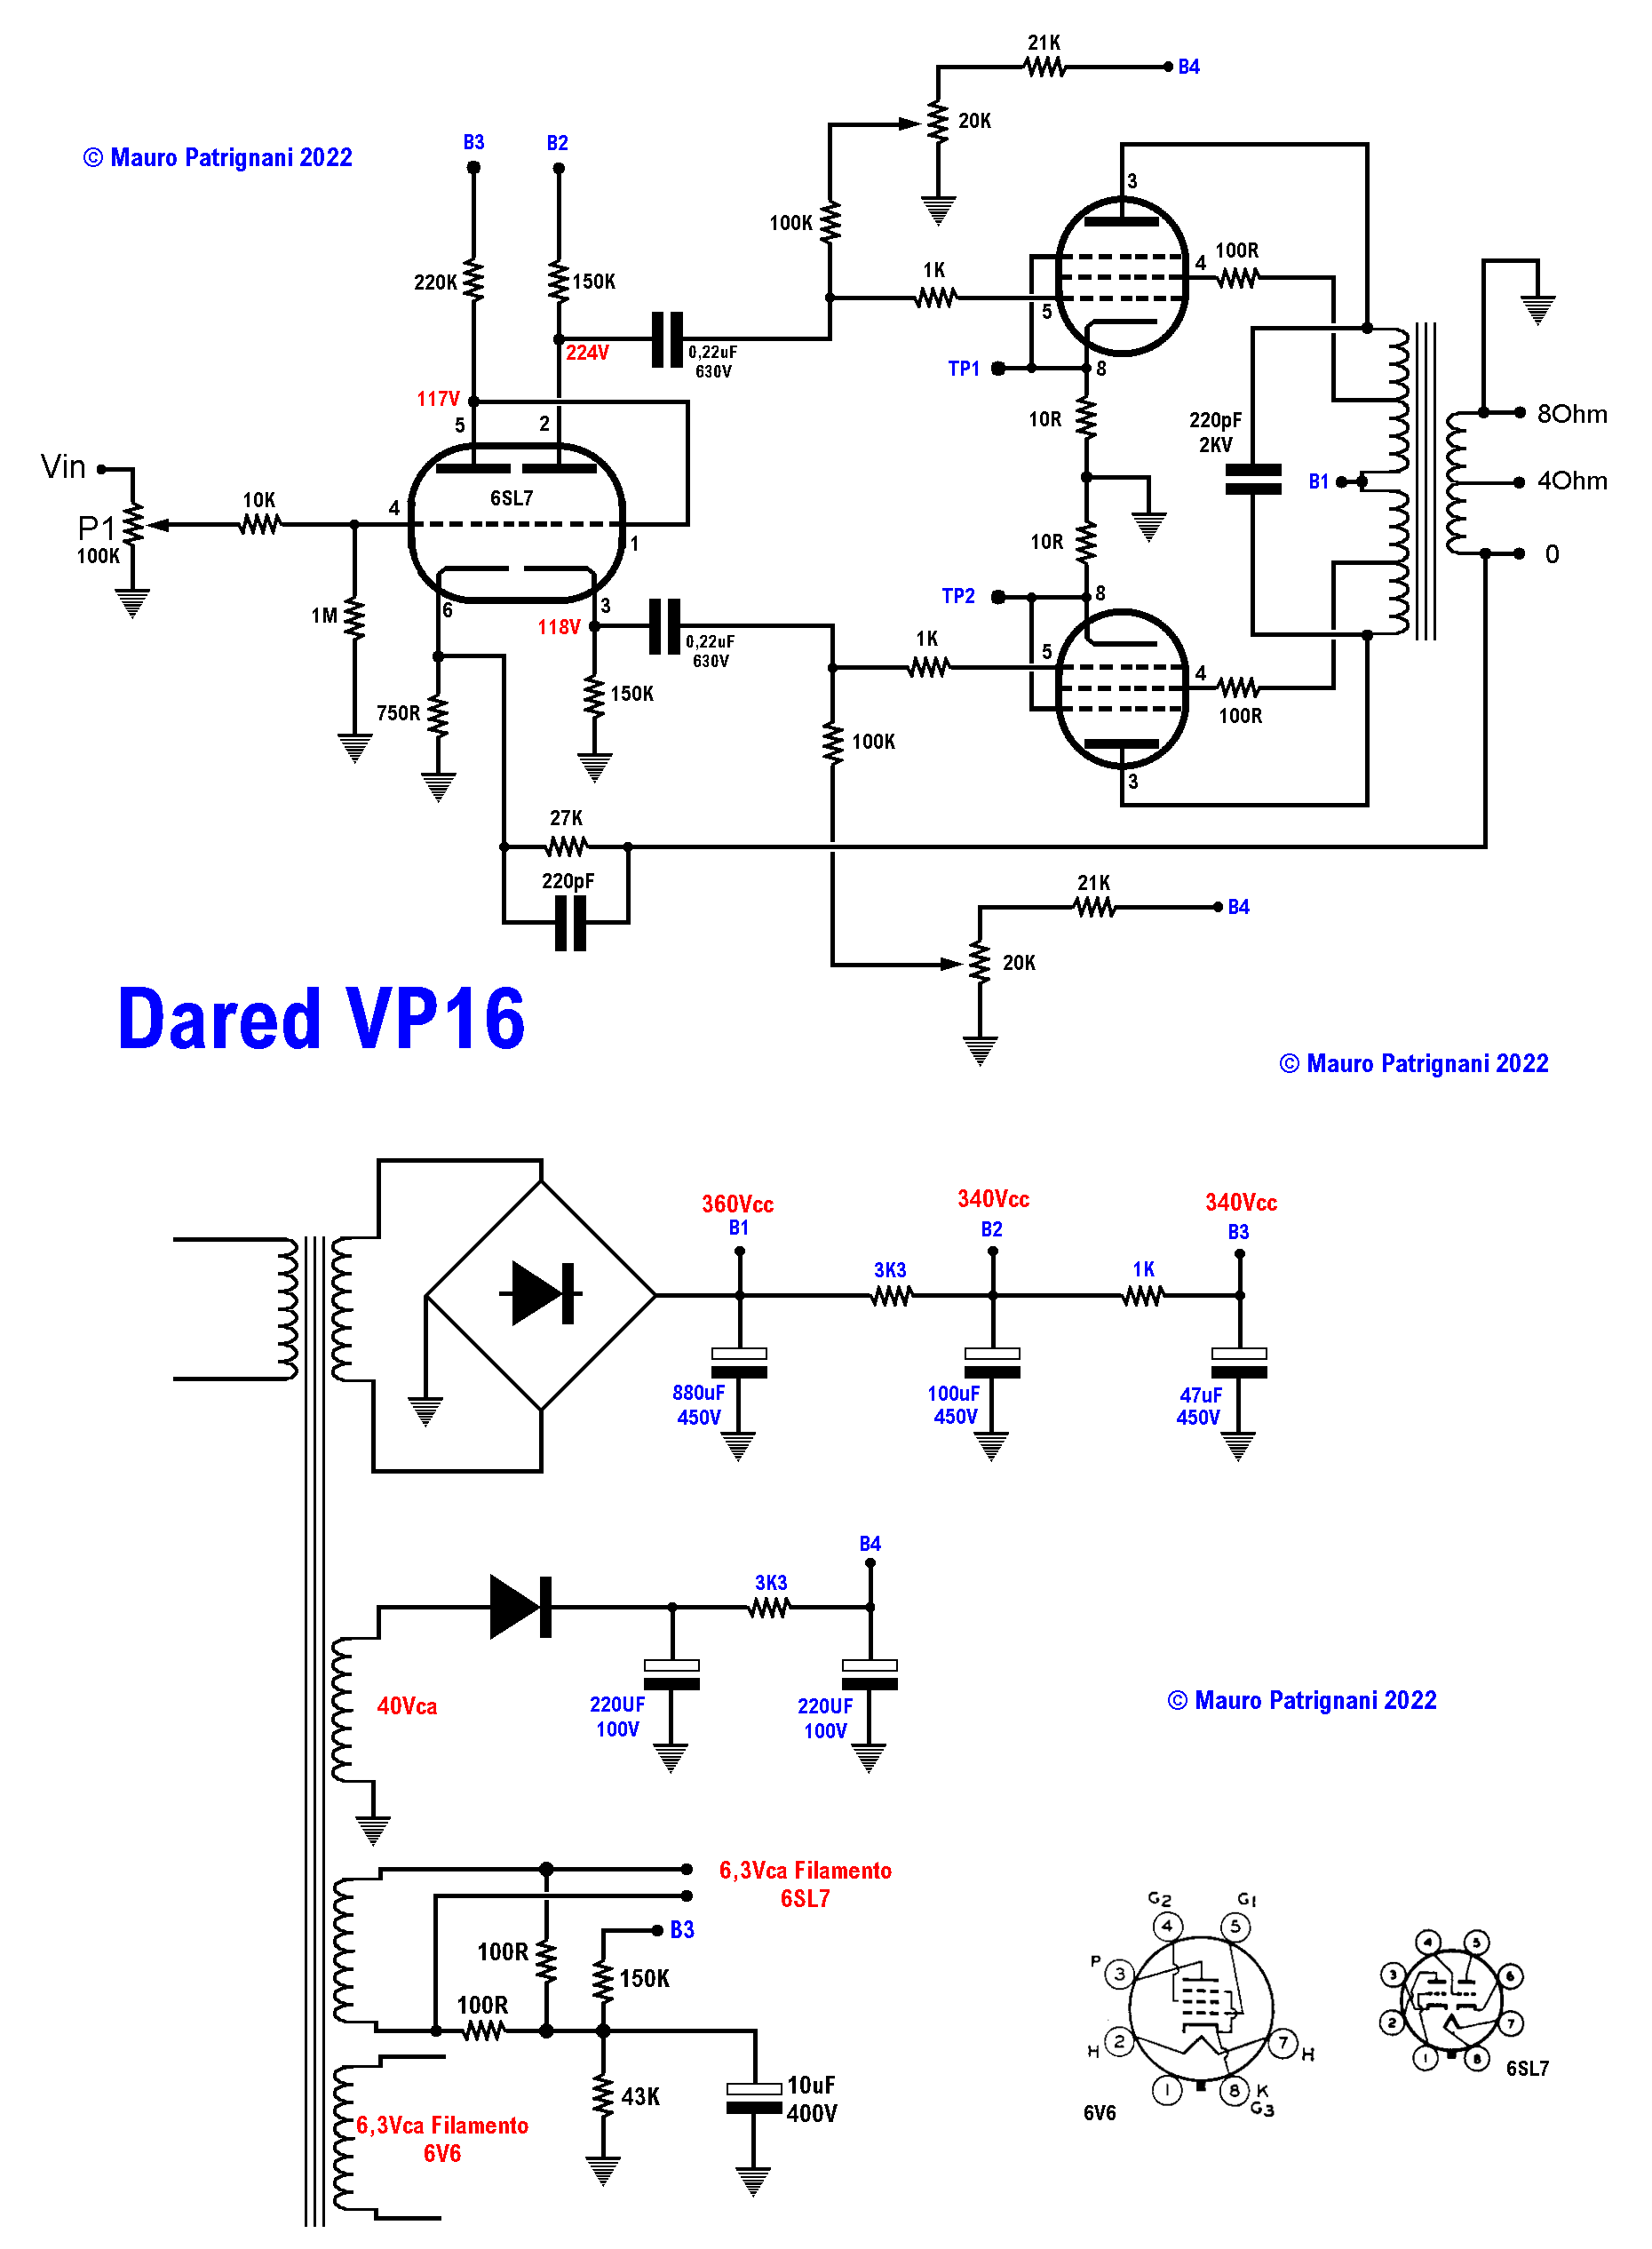 Amplificatore valvolare Dared vp16 - Come si presenta dopo le modifiche